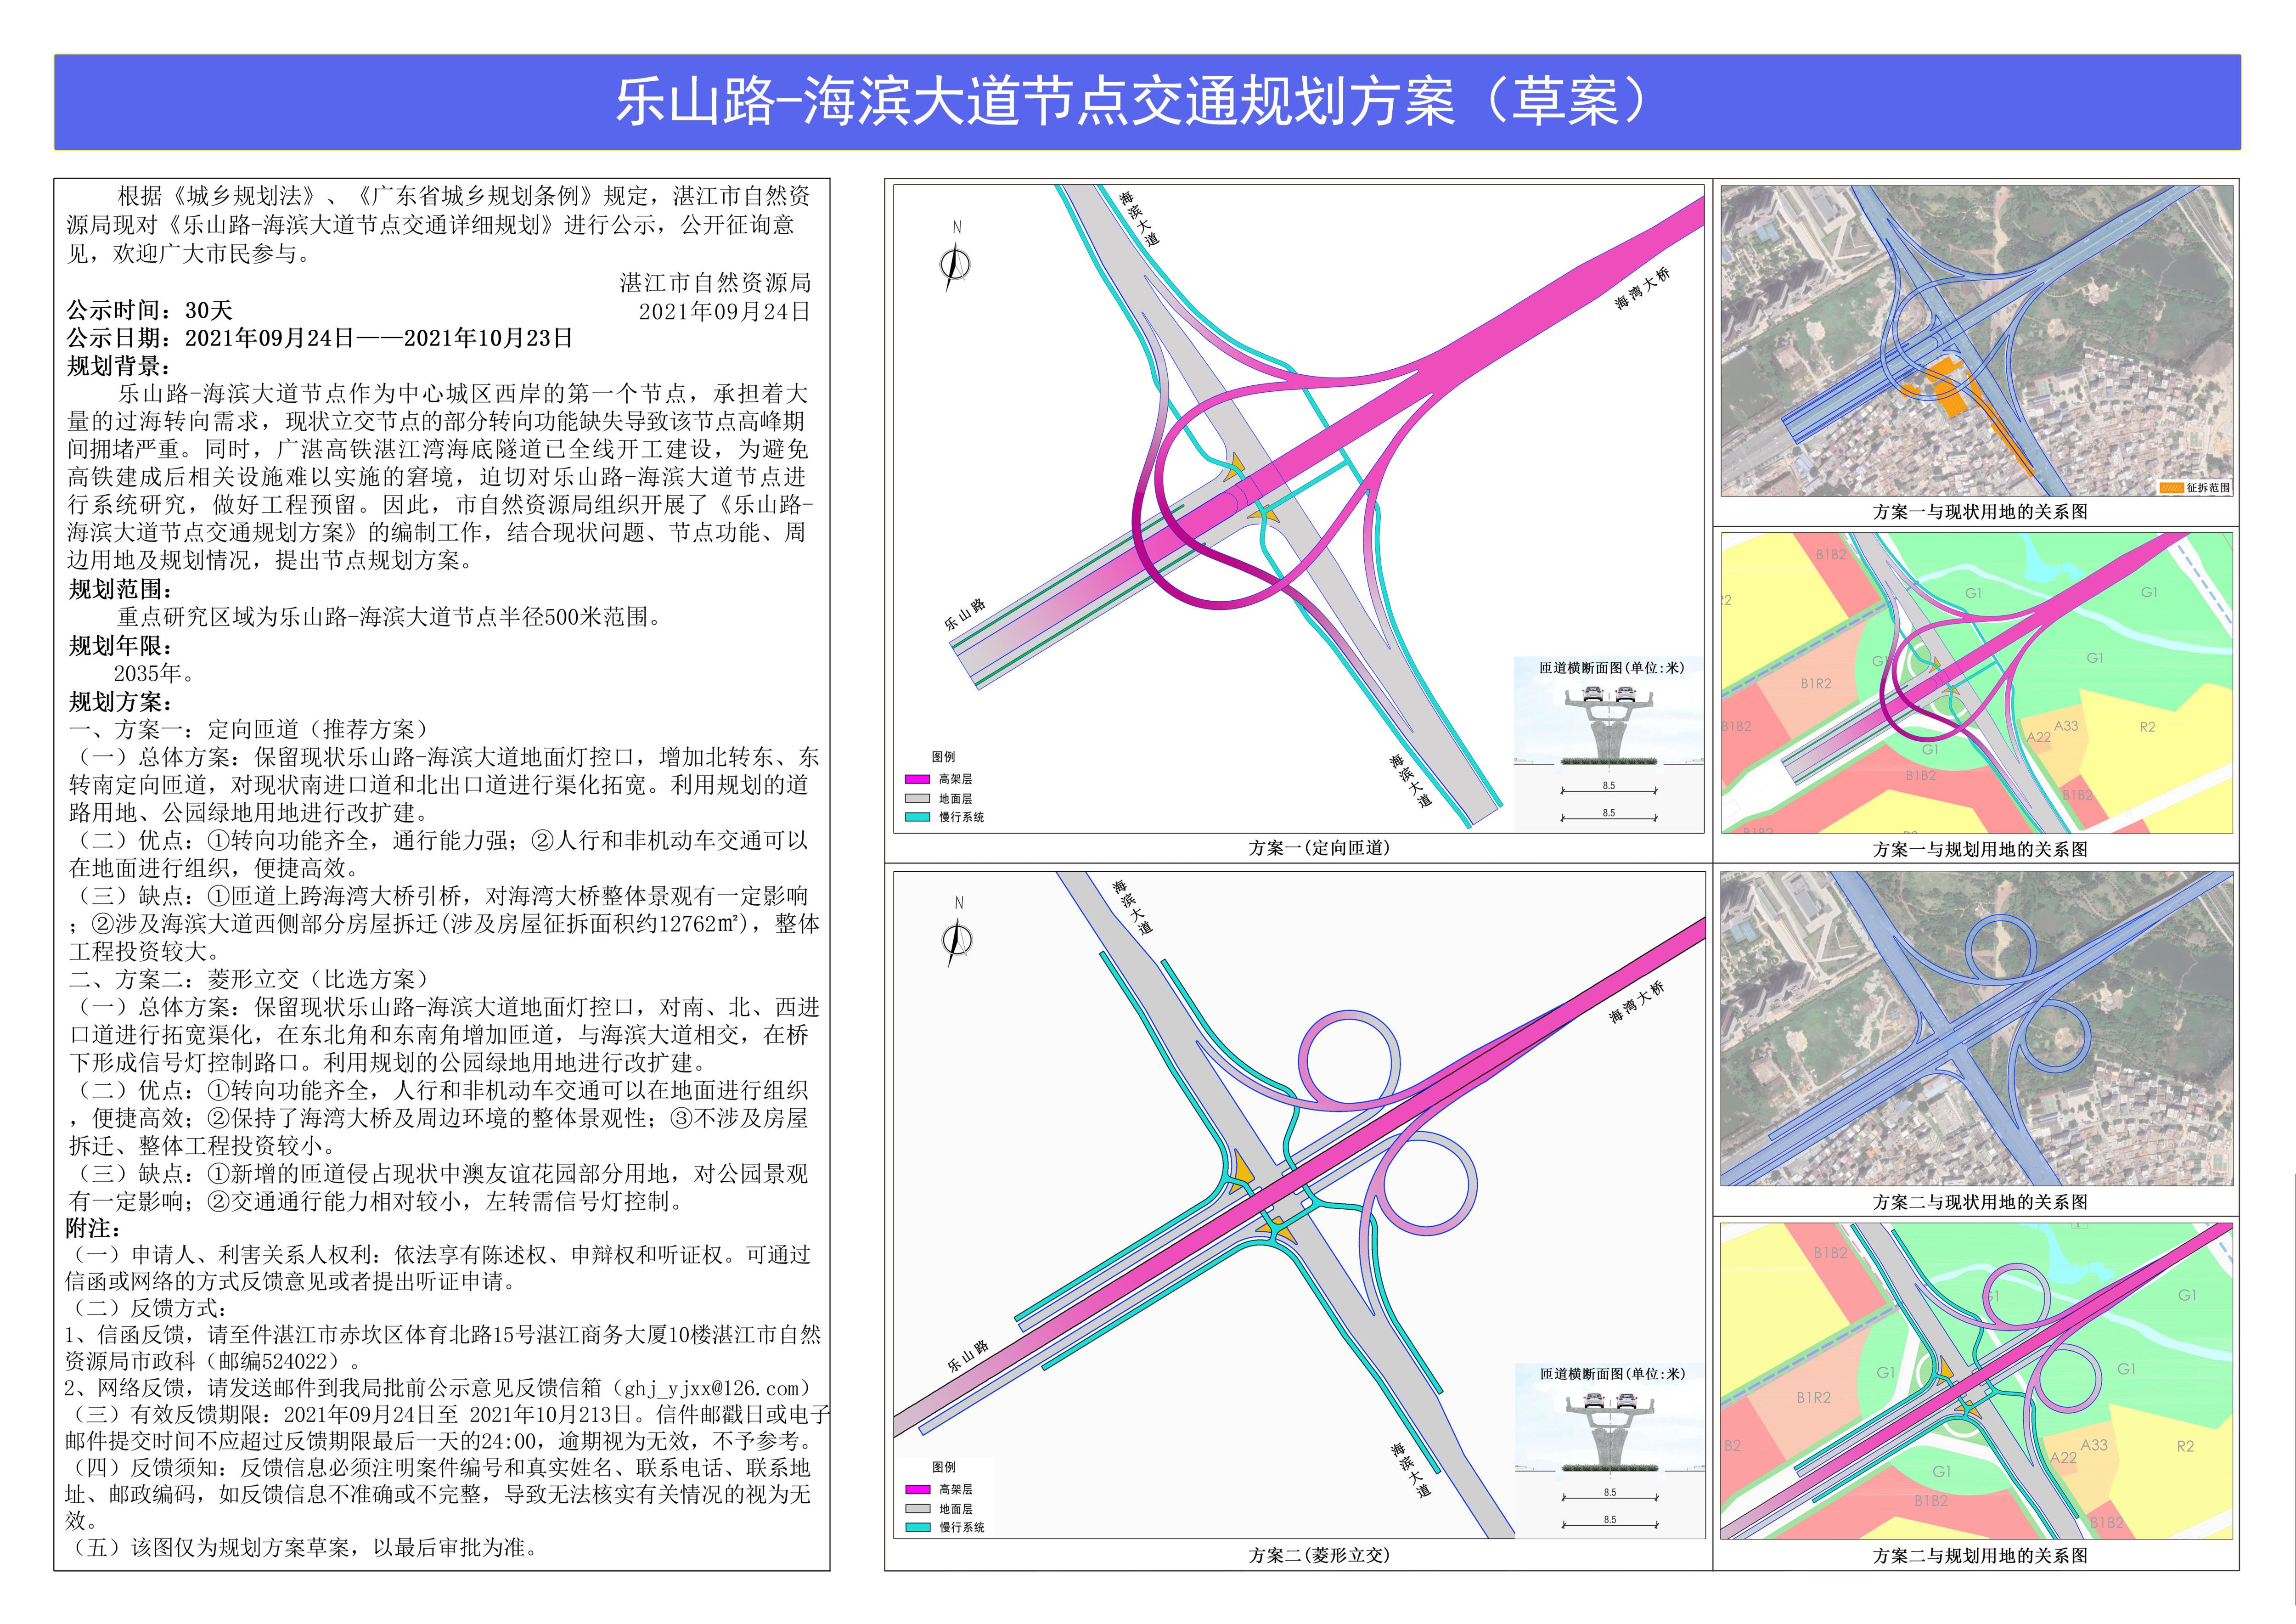 乐山路-海滨大道节点交通详细规划公示稿2021 - 副本.jpg